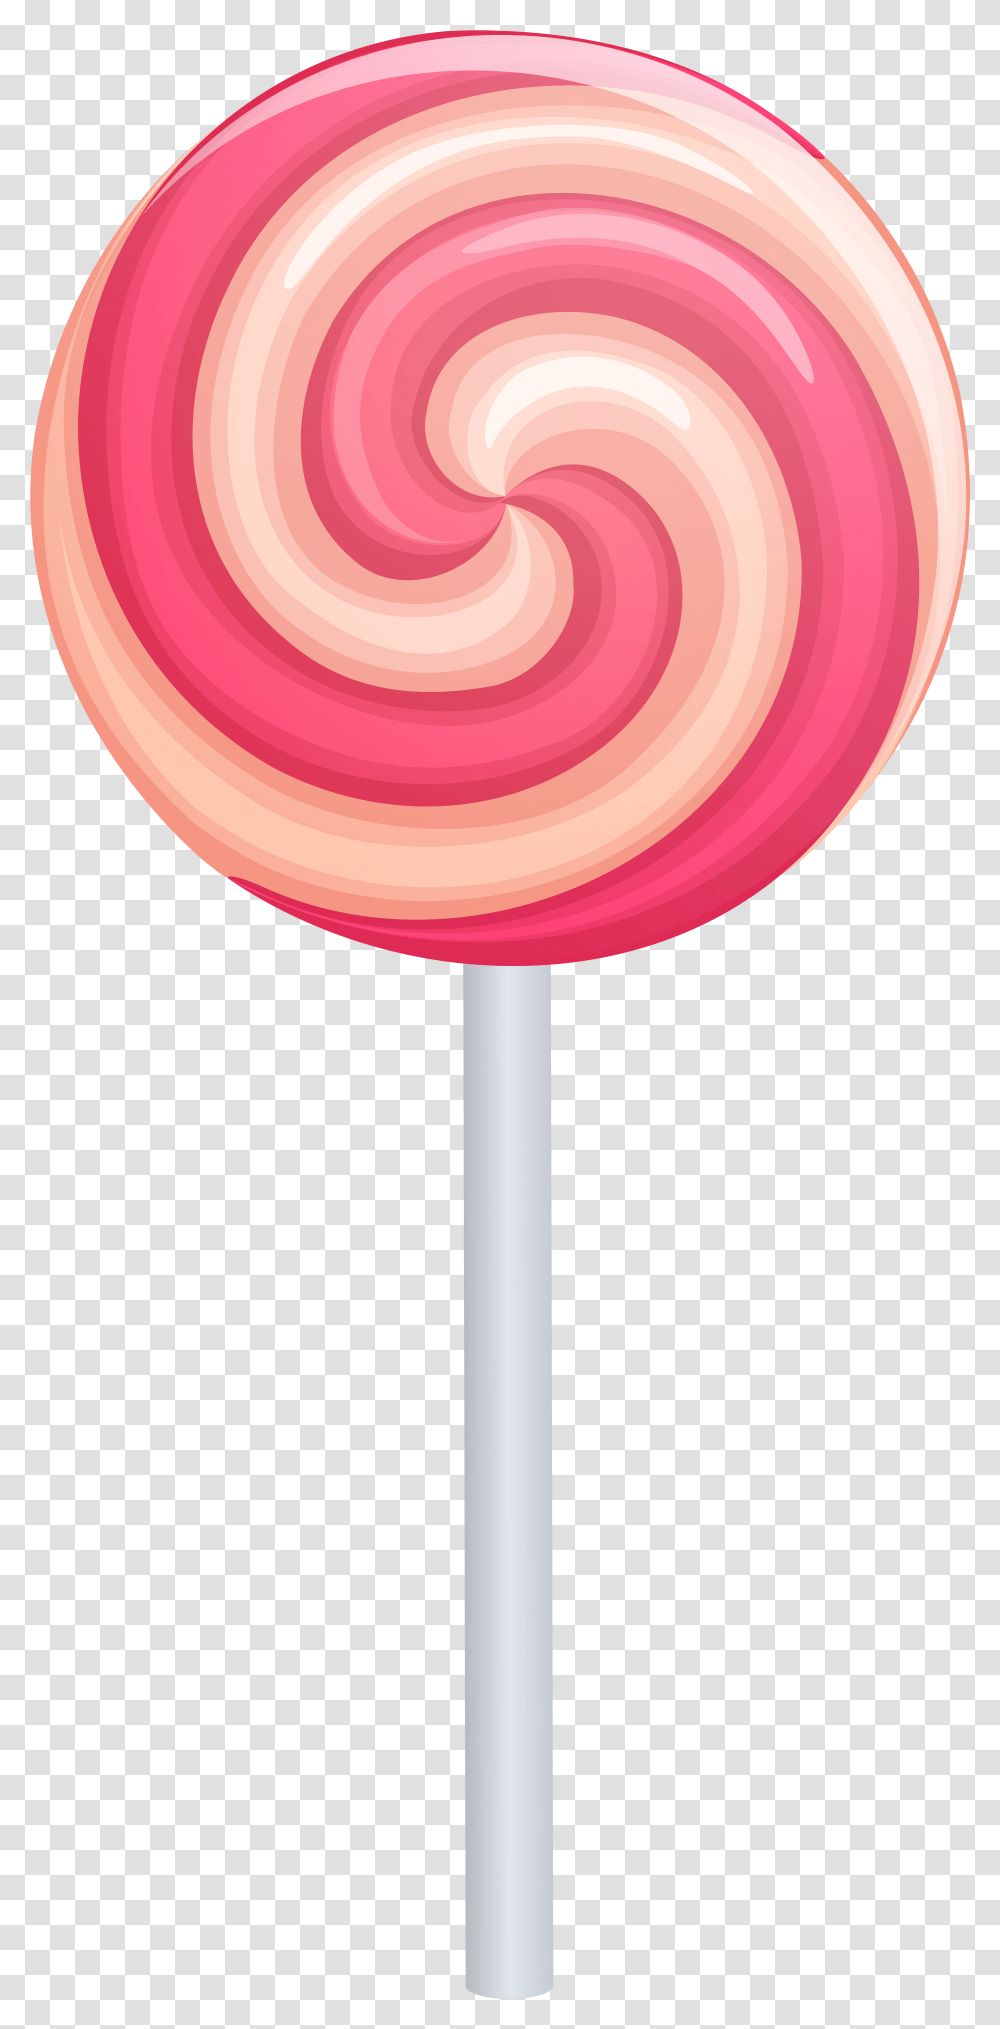 Lollipop Clipart One Lollipop Candy, Food, Lamp Transparent Png